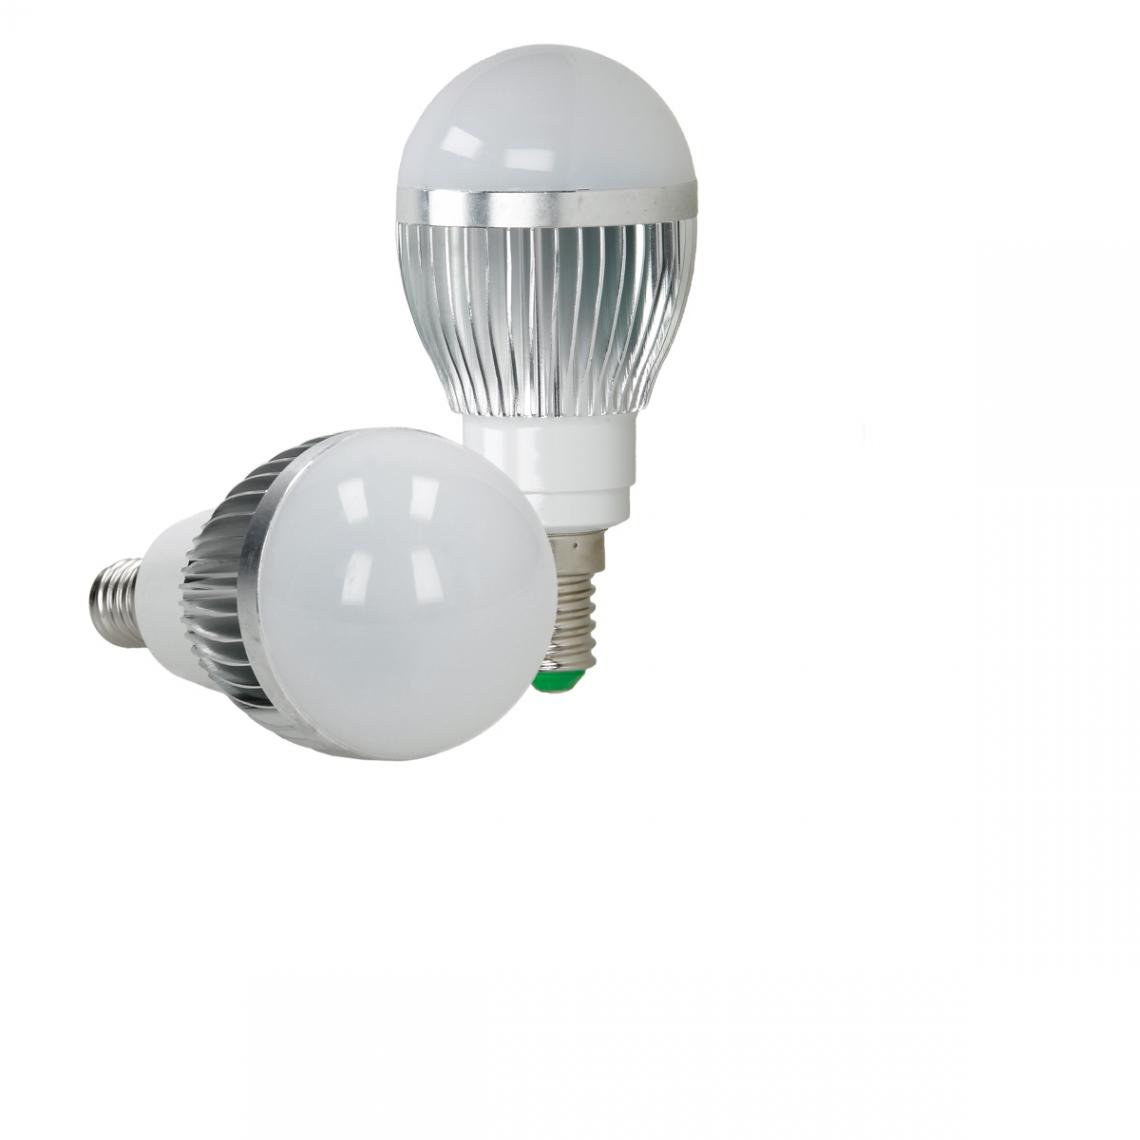 Ecd Germany - Ampoule LED RVB 3W E14 avec télécommande IR 24 boutons gradables - Ampoules LED